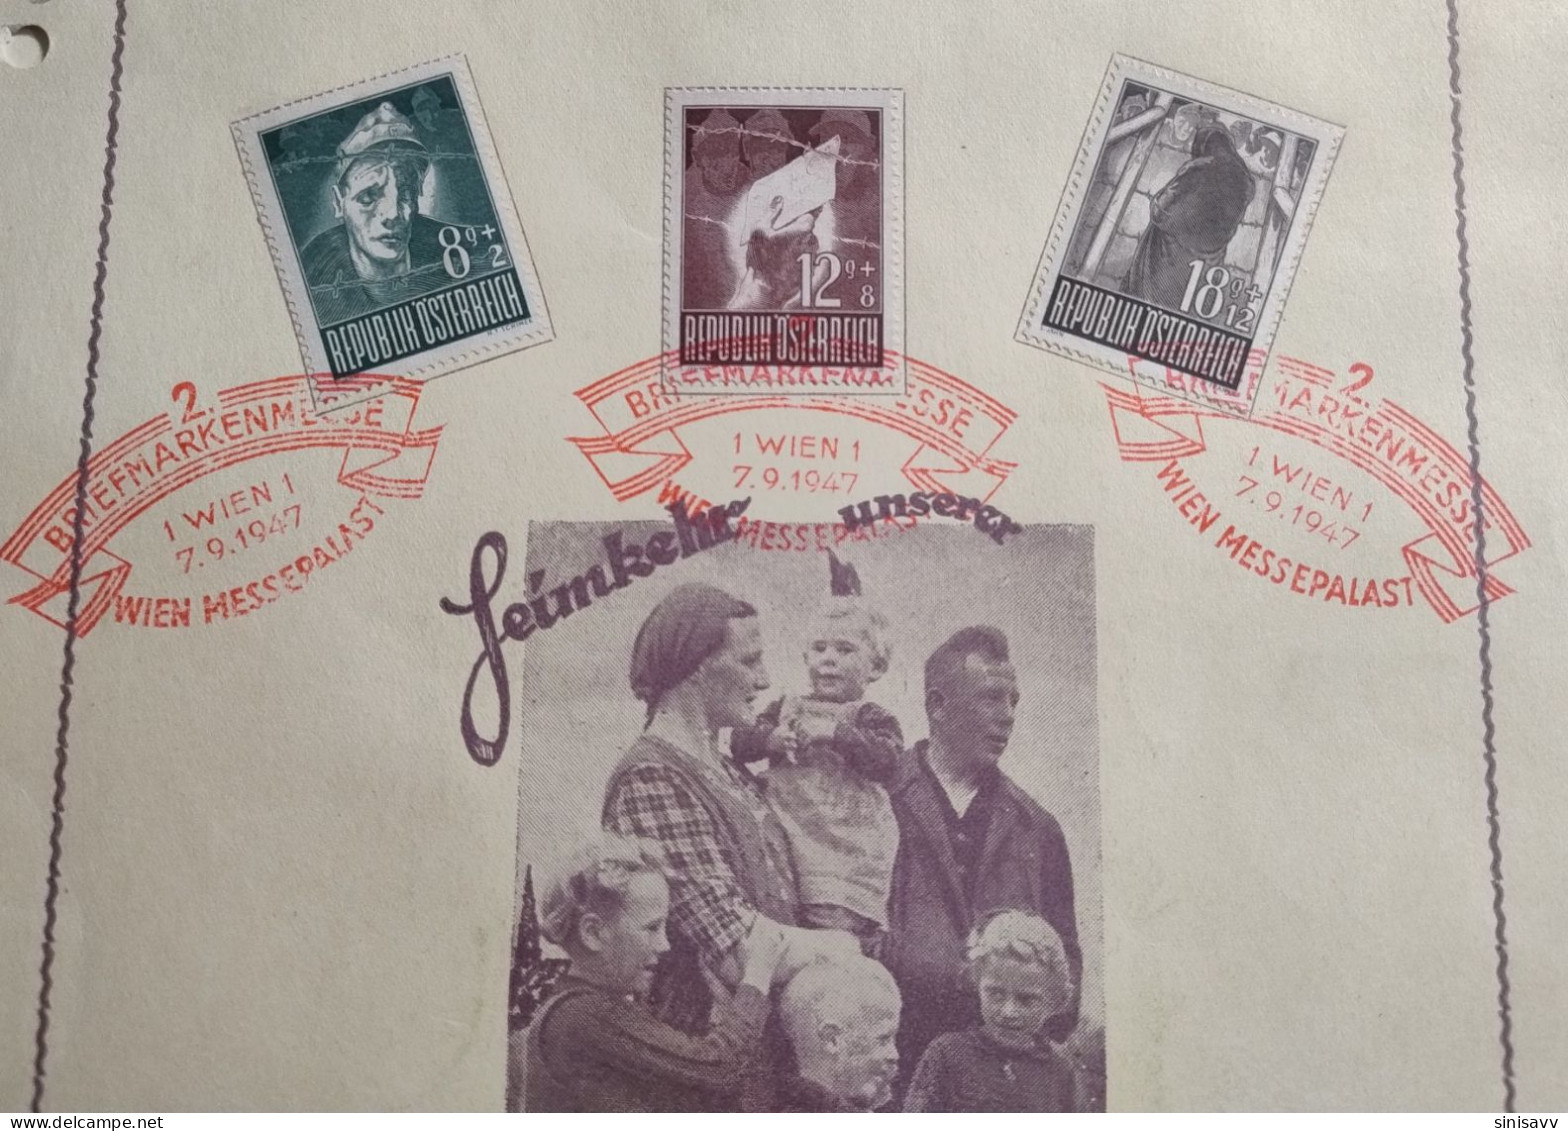 Austria - 2. Briefmarkenmesse Wien, Messepalast 07-14.09.1947 - Used Stamps